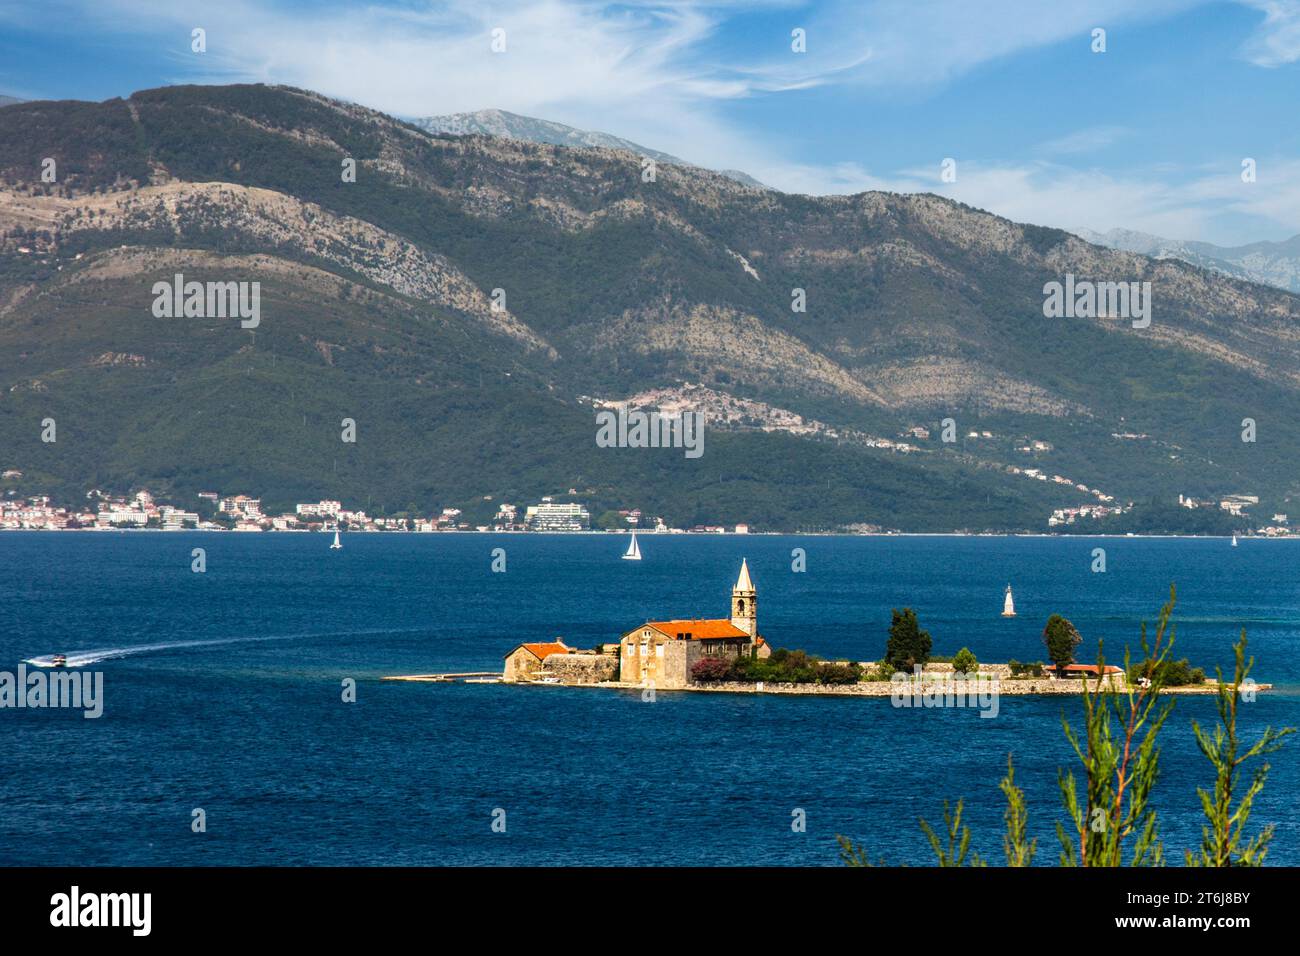 Die bergige und buchtreiche Halbinsel Lustica liegt vor der fjordartigen Bucht von Kotor in der Adria, Montenegro, Lustica, Montenegro Stockfoto